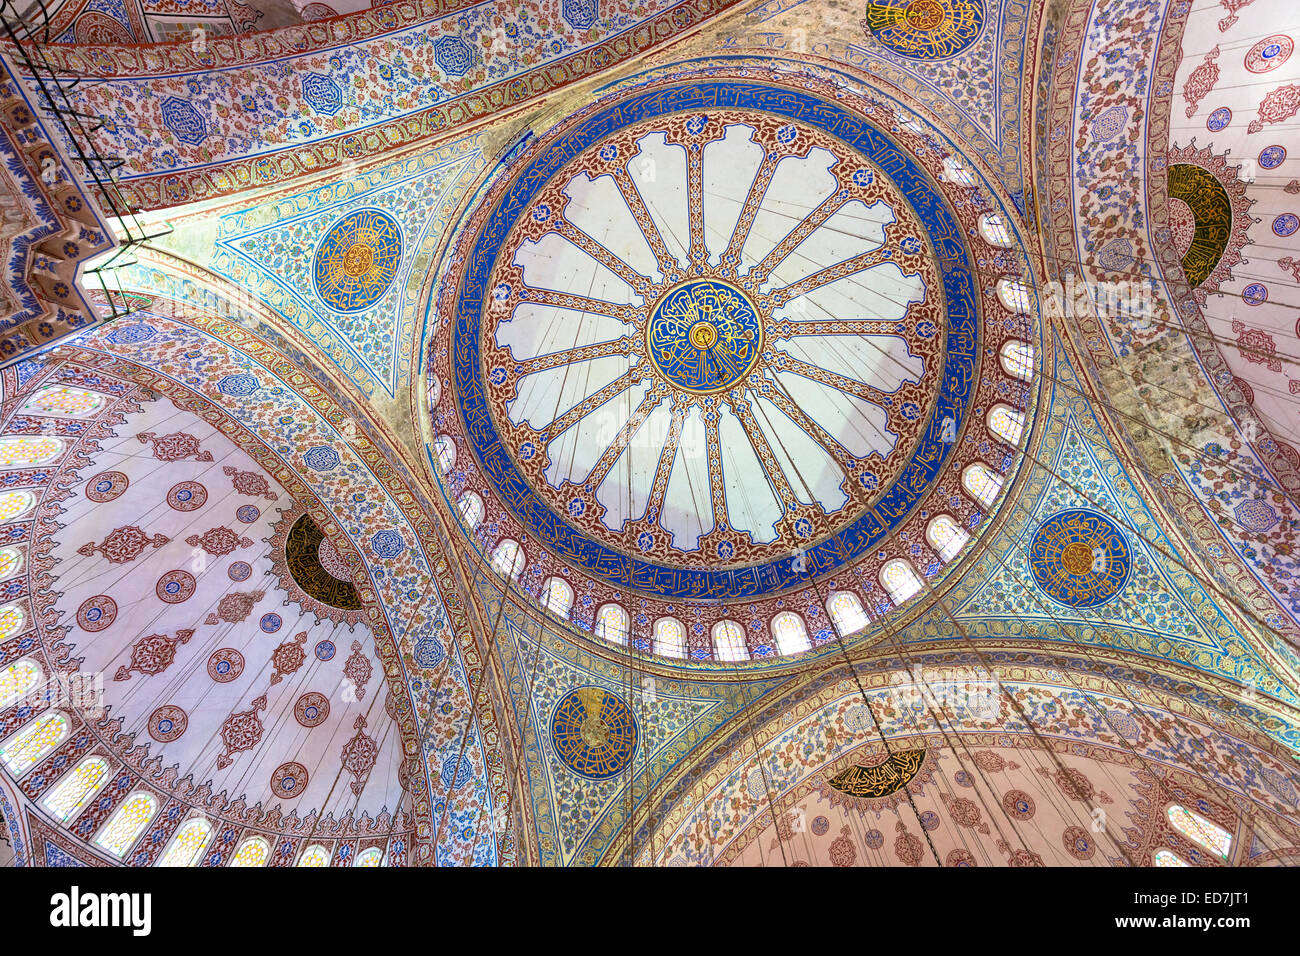 Verzierte verzierten Kuppeln der blauen Moschee, Sultanahmet Camii oder Sultan Ahmed Mosque in Istanbul, Türkei Stockfoto